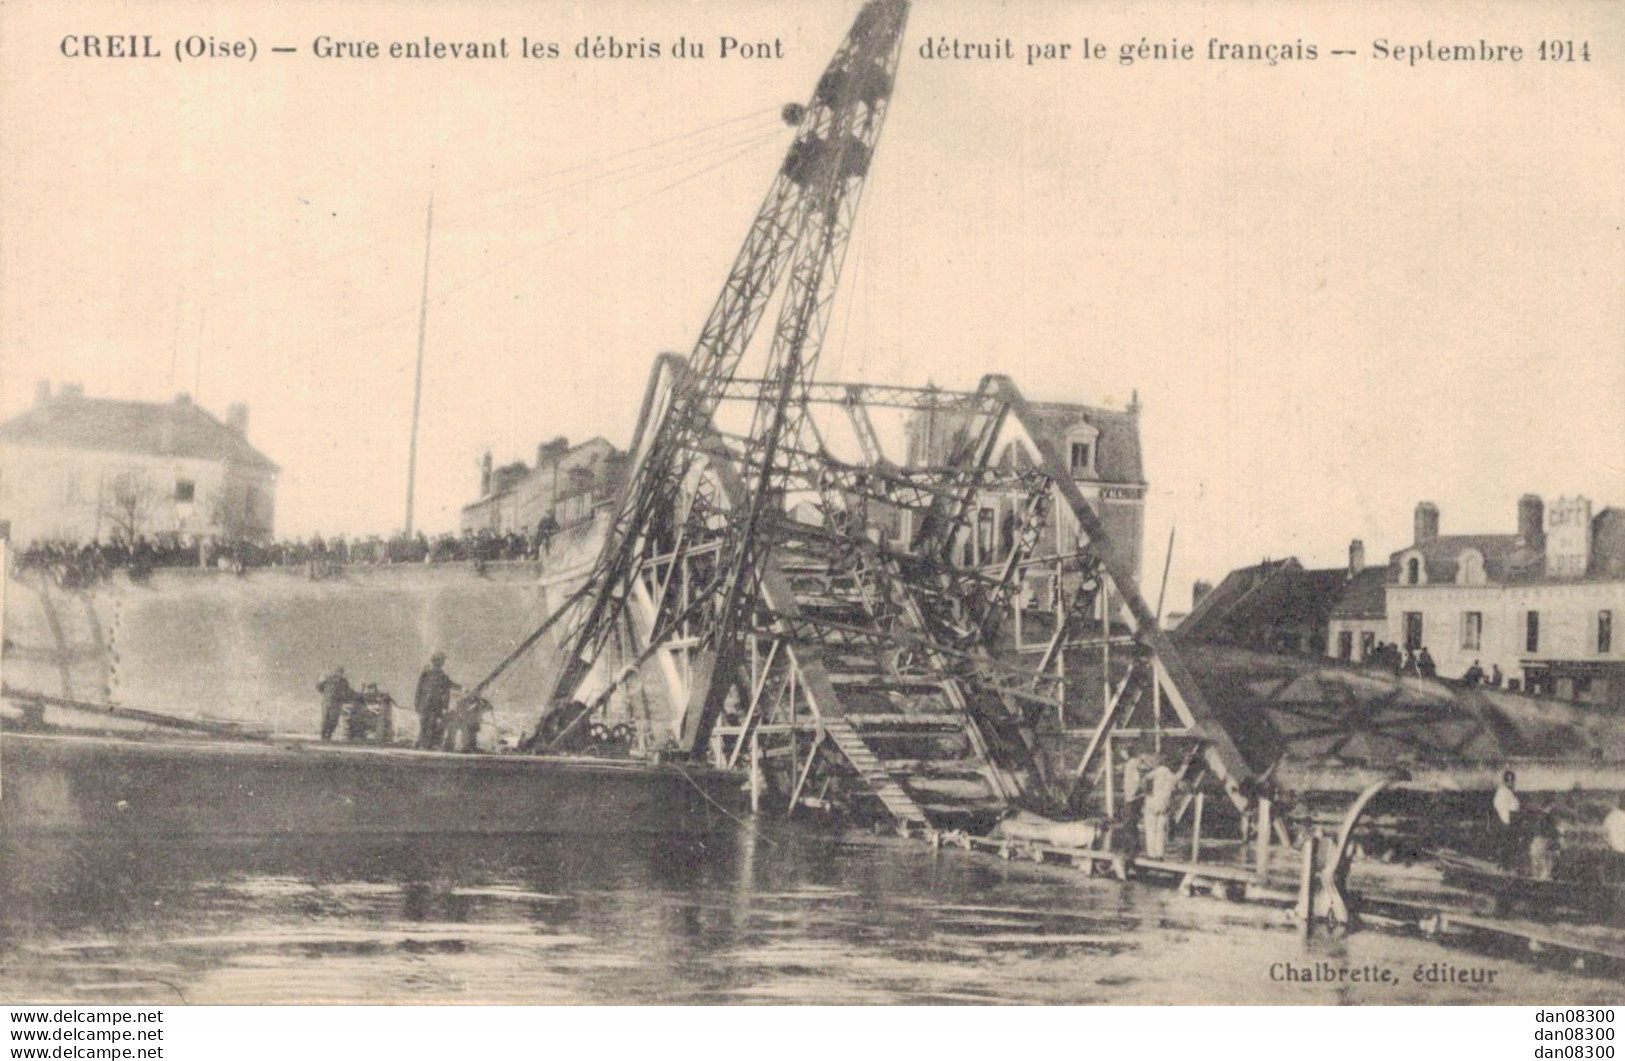 60 CREIL GRUE ENLEVANT LES DEBRIS DU PONT DETRUIT PAR LE GENIE FRANCAIS SEPTEMBRE 1914 - Guerre 1914-18